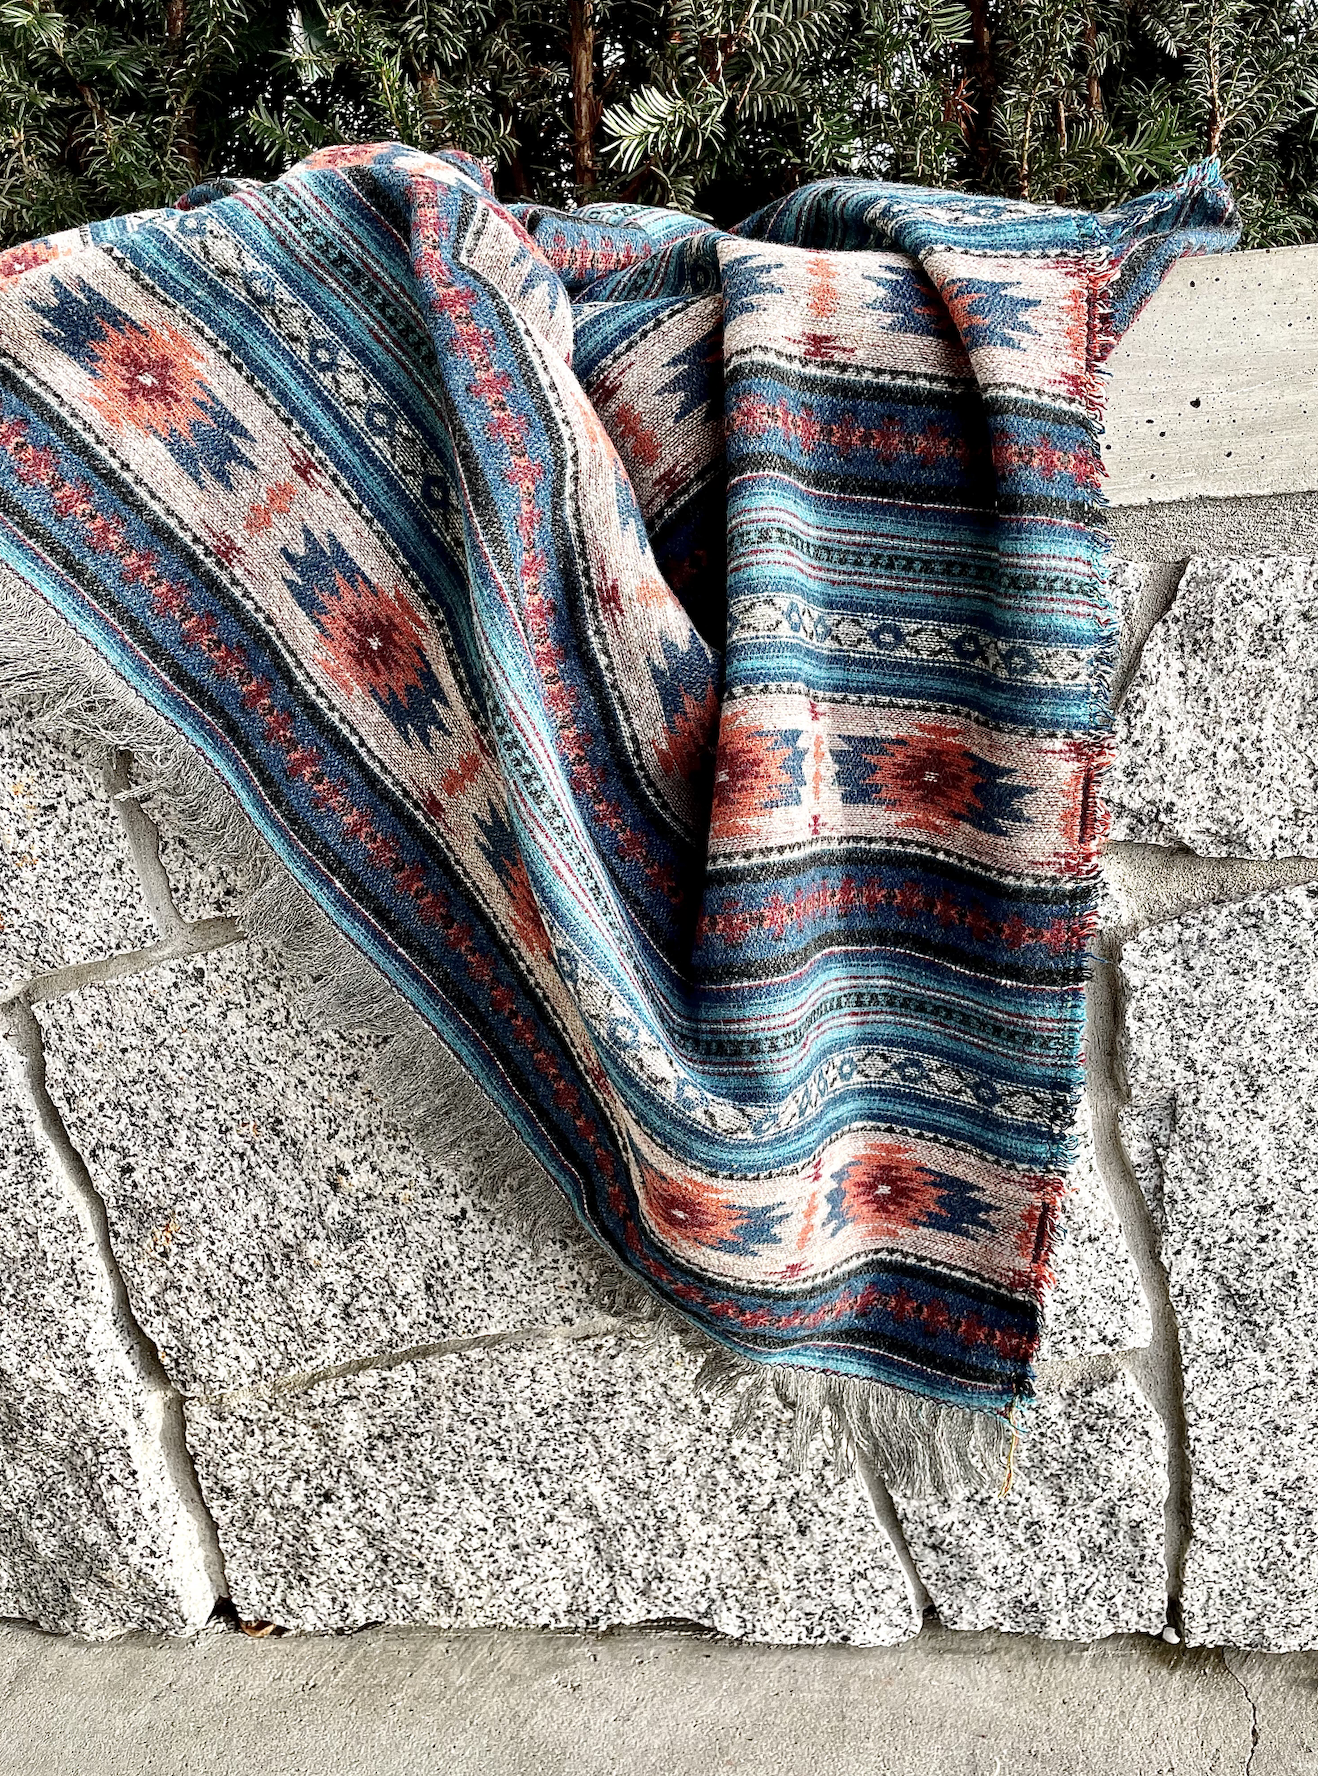 west coast alchemist handmade blankets baskets in abbotsford fraser valley british columbia canada 26